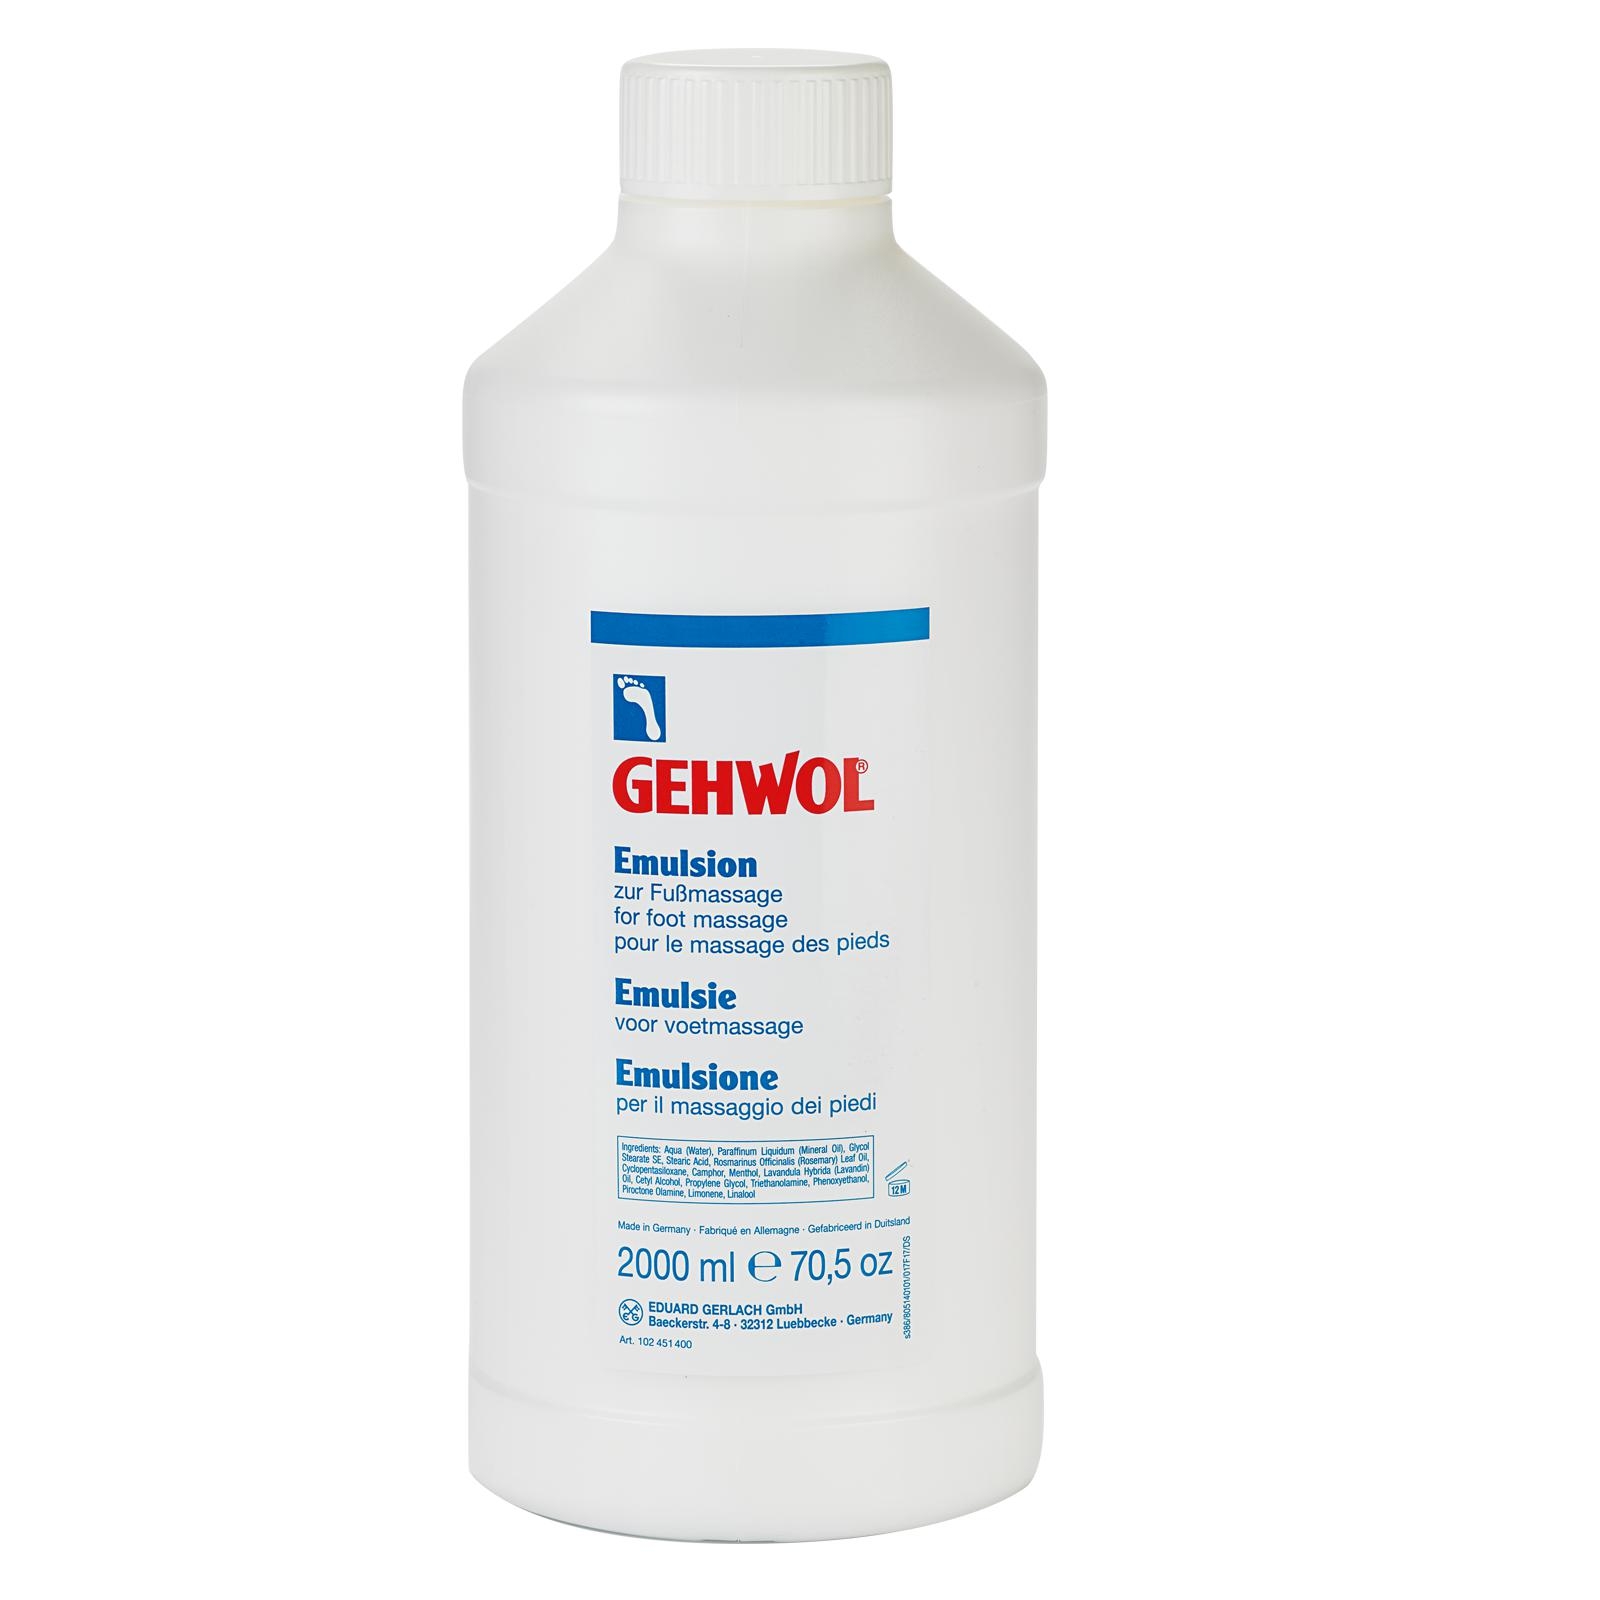 GEHWOL Emulsion zur Fußmassage 2000 ml